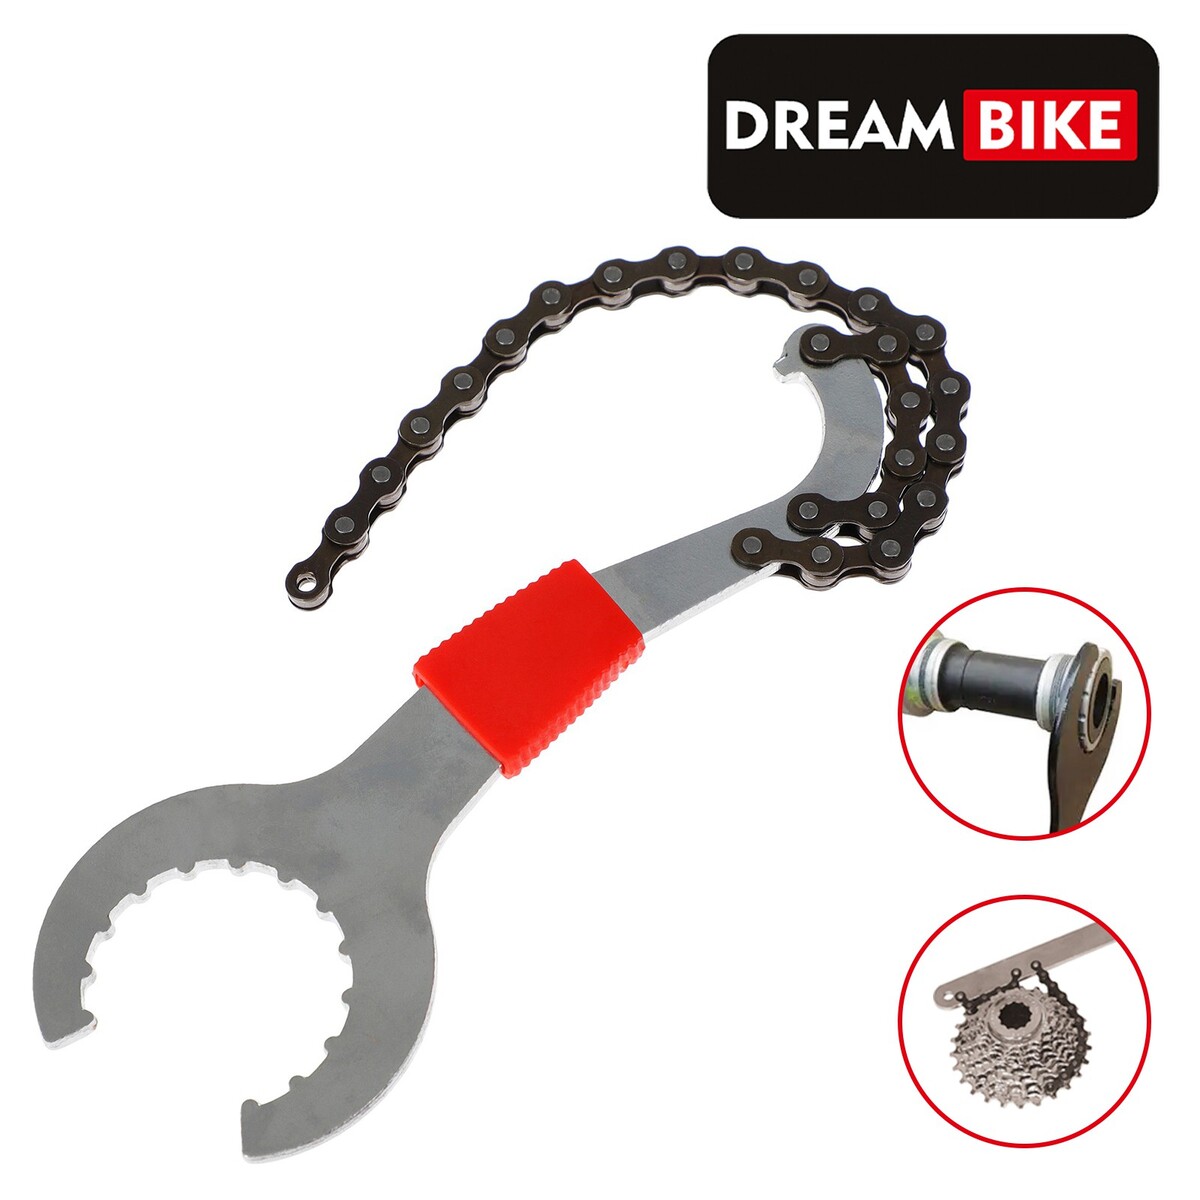 Съемник каретки dream bike, с хлыстом для кассеты bike hand съёмник каретки yc 28bb